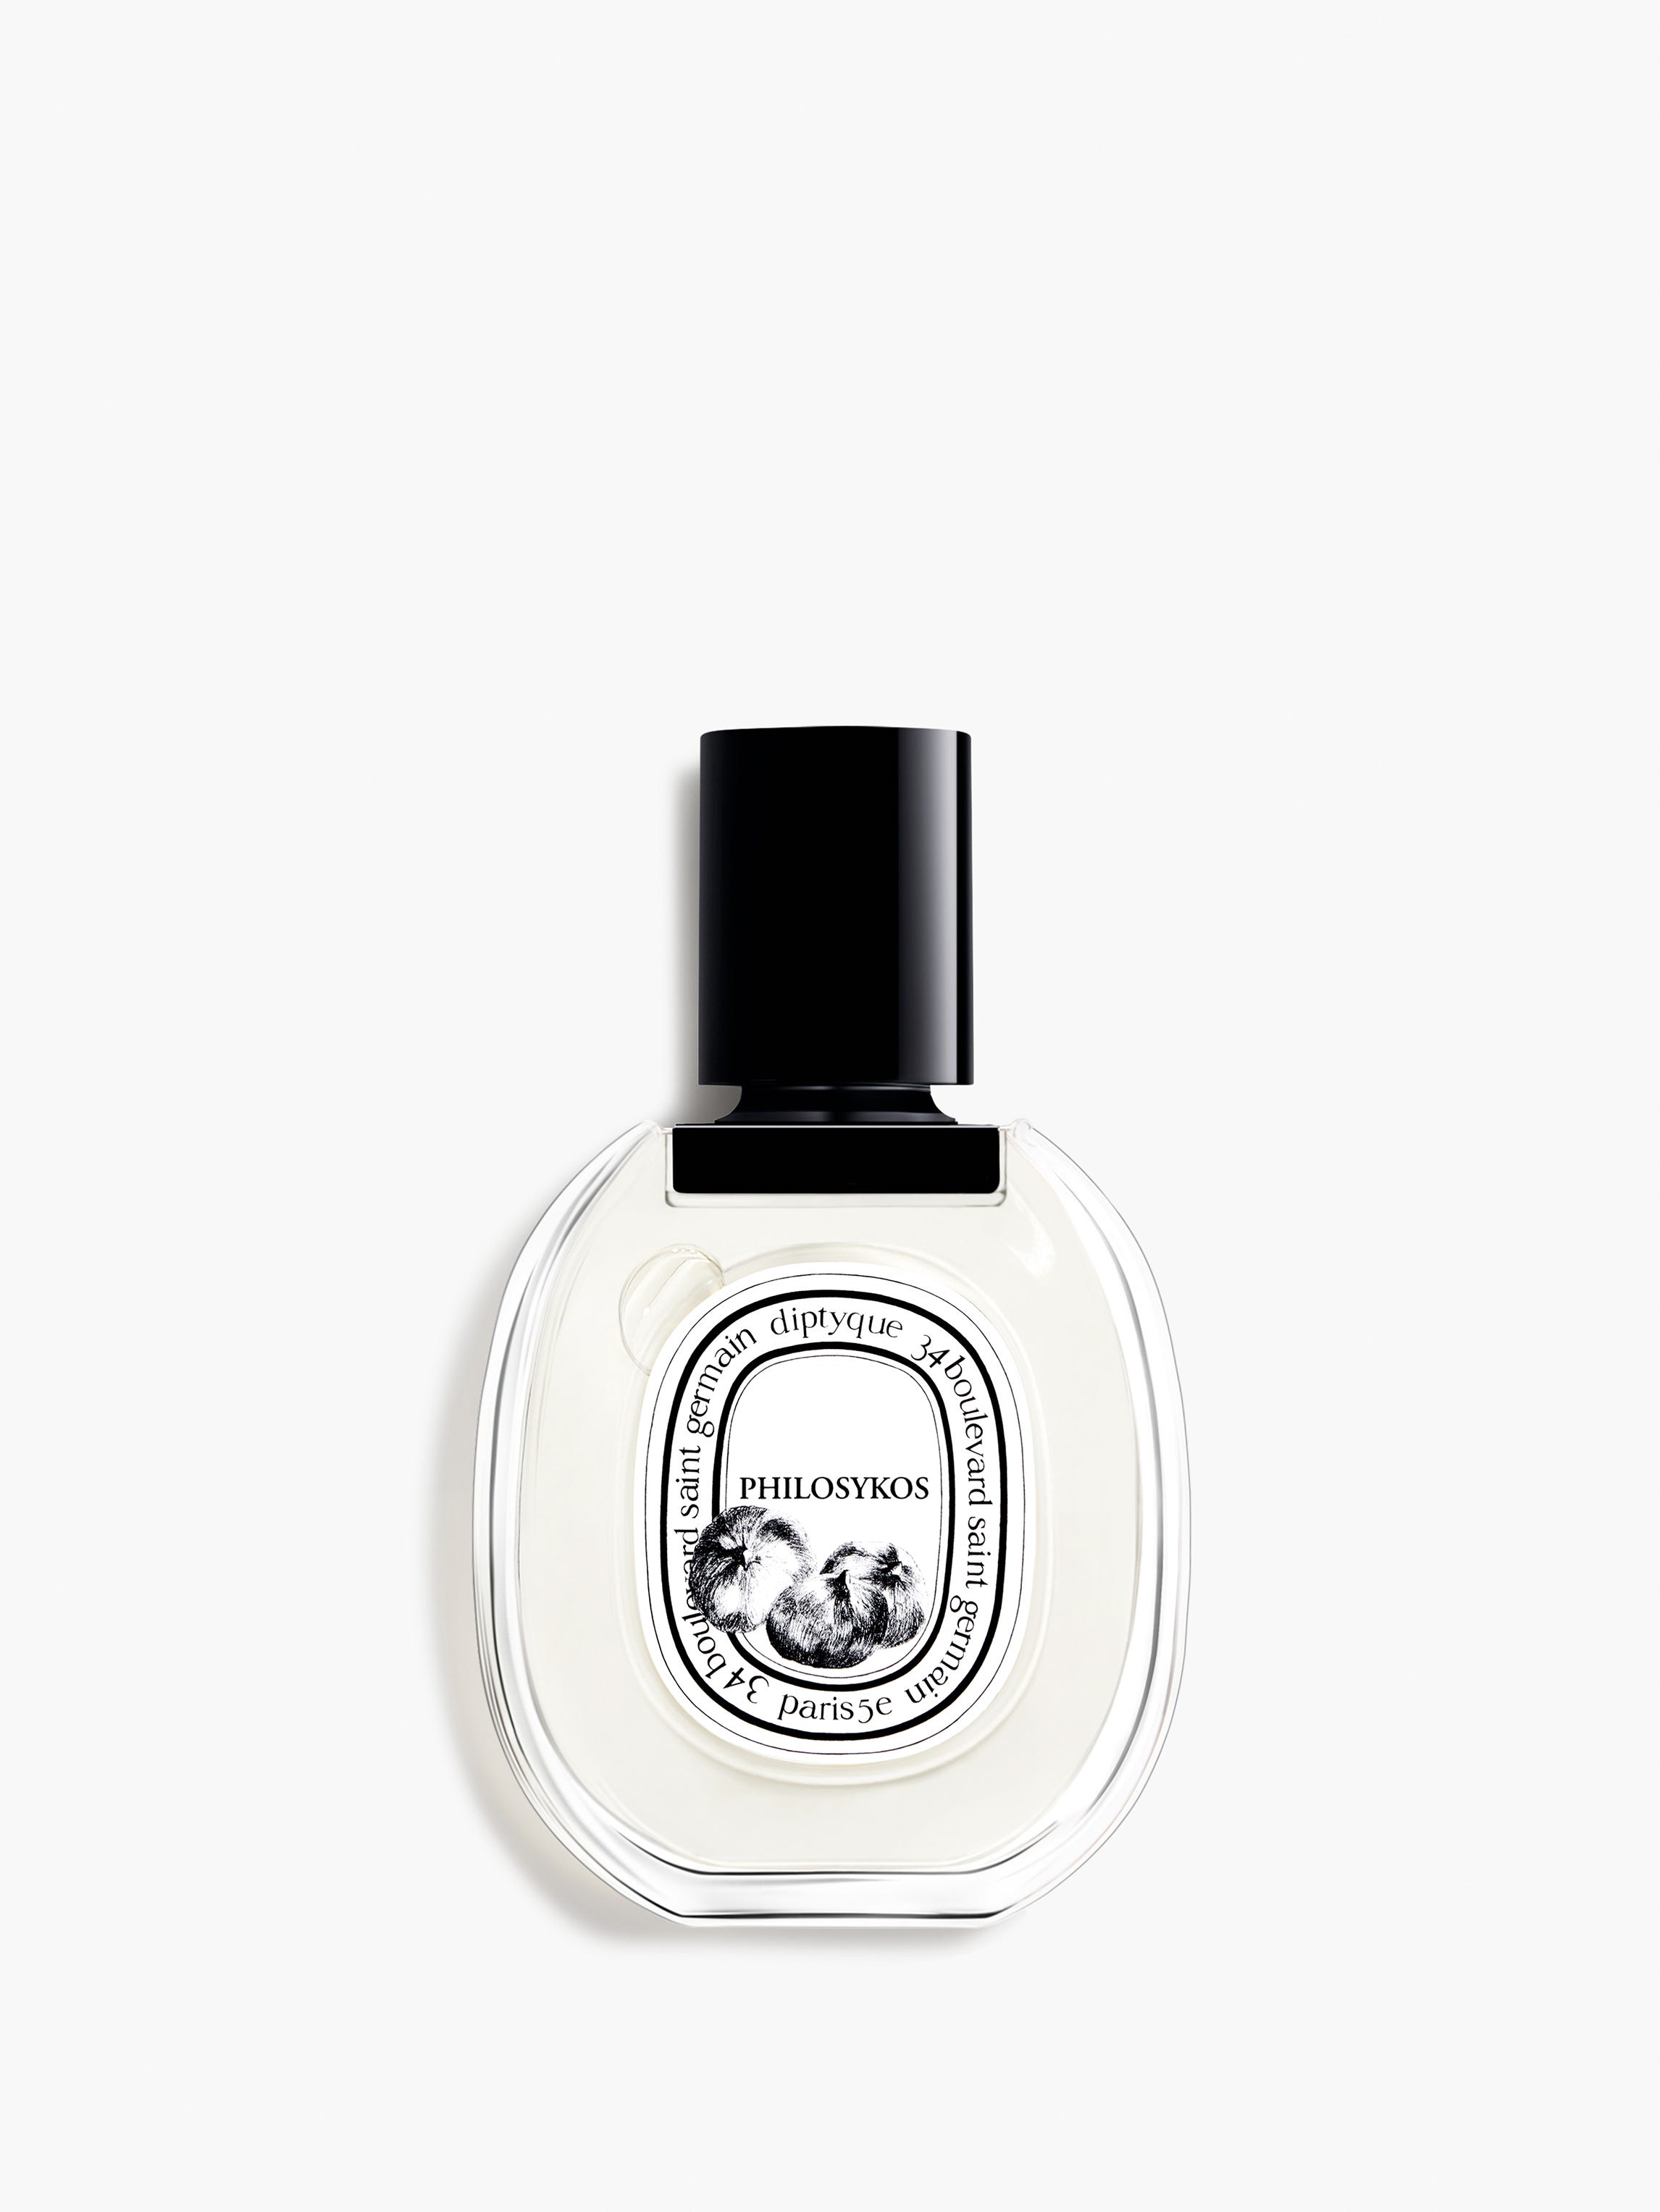 オリジナル ディプティック オードトワレ 50ML フィロシコス 香水(ユニ 